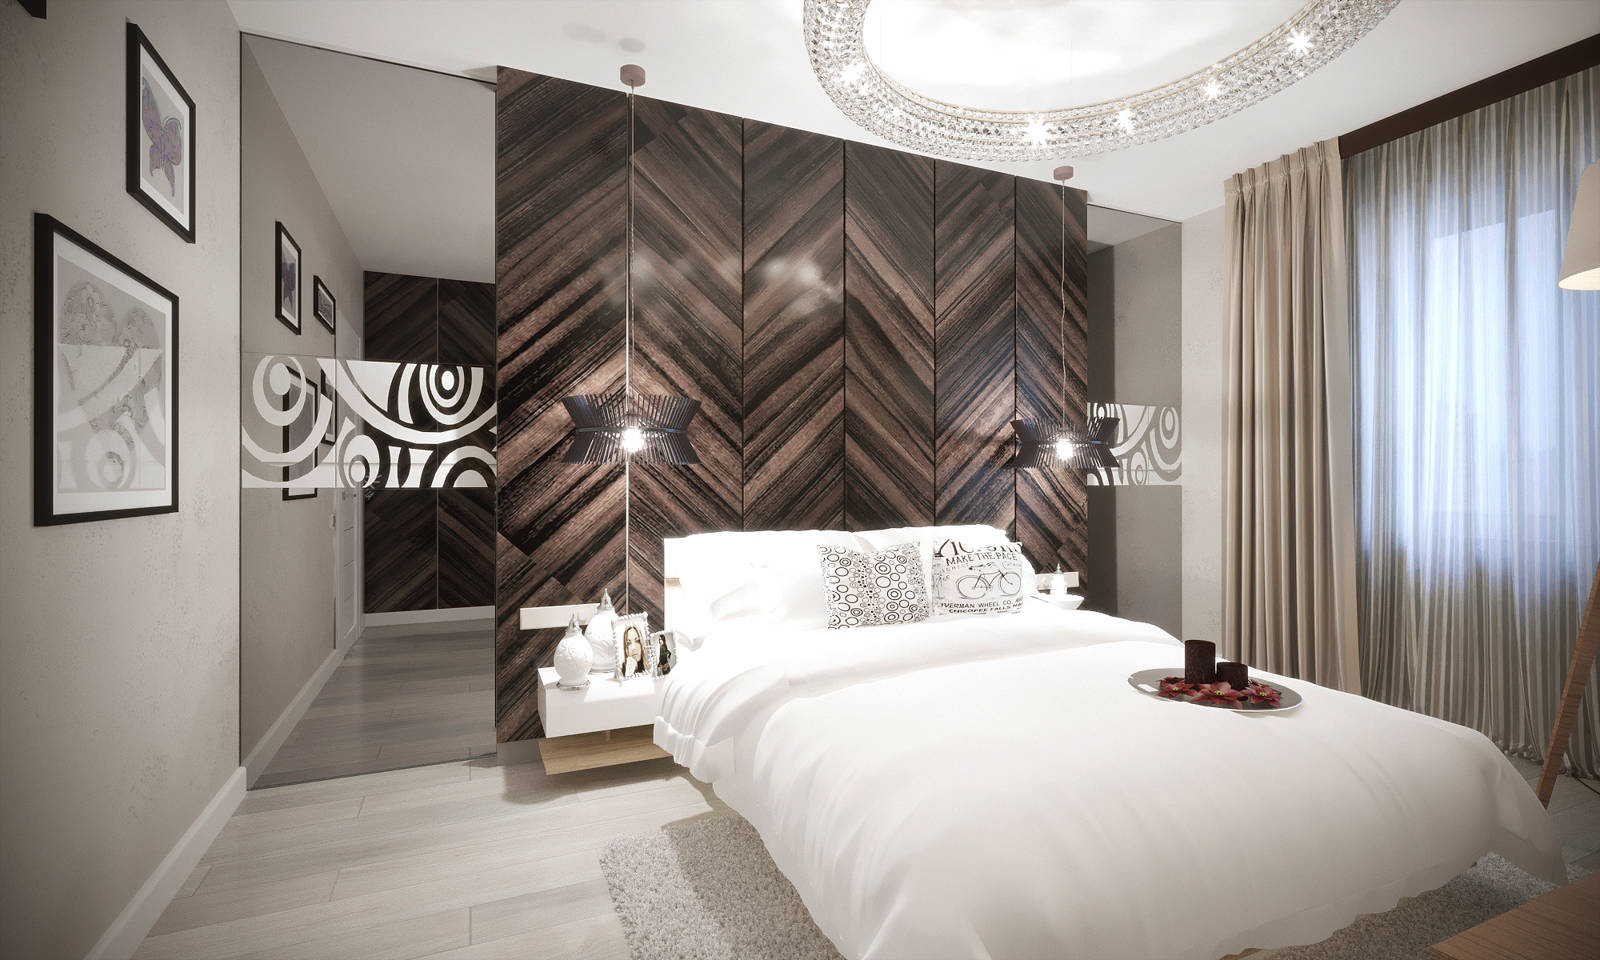 Дизайн спальни Киев современный стиль, панели на стене паркет на стене, дерево светильники